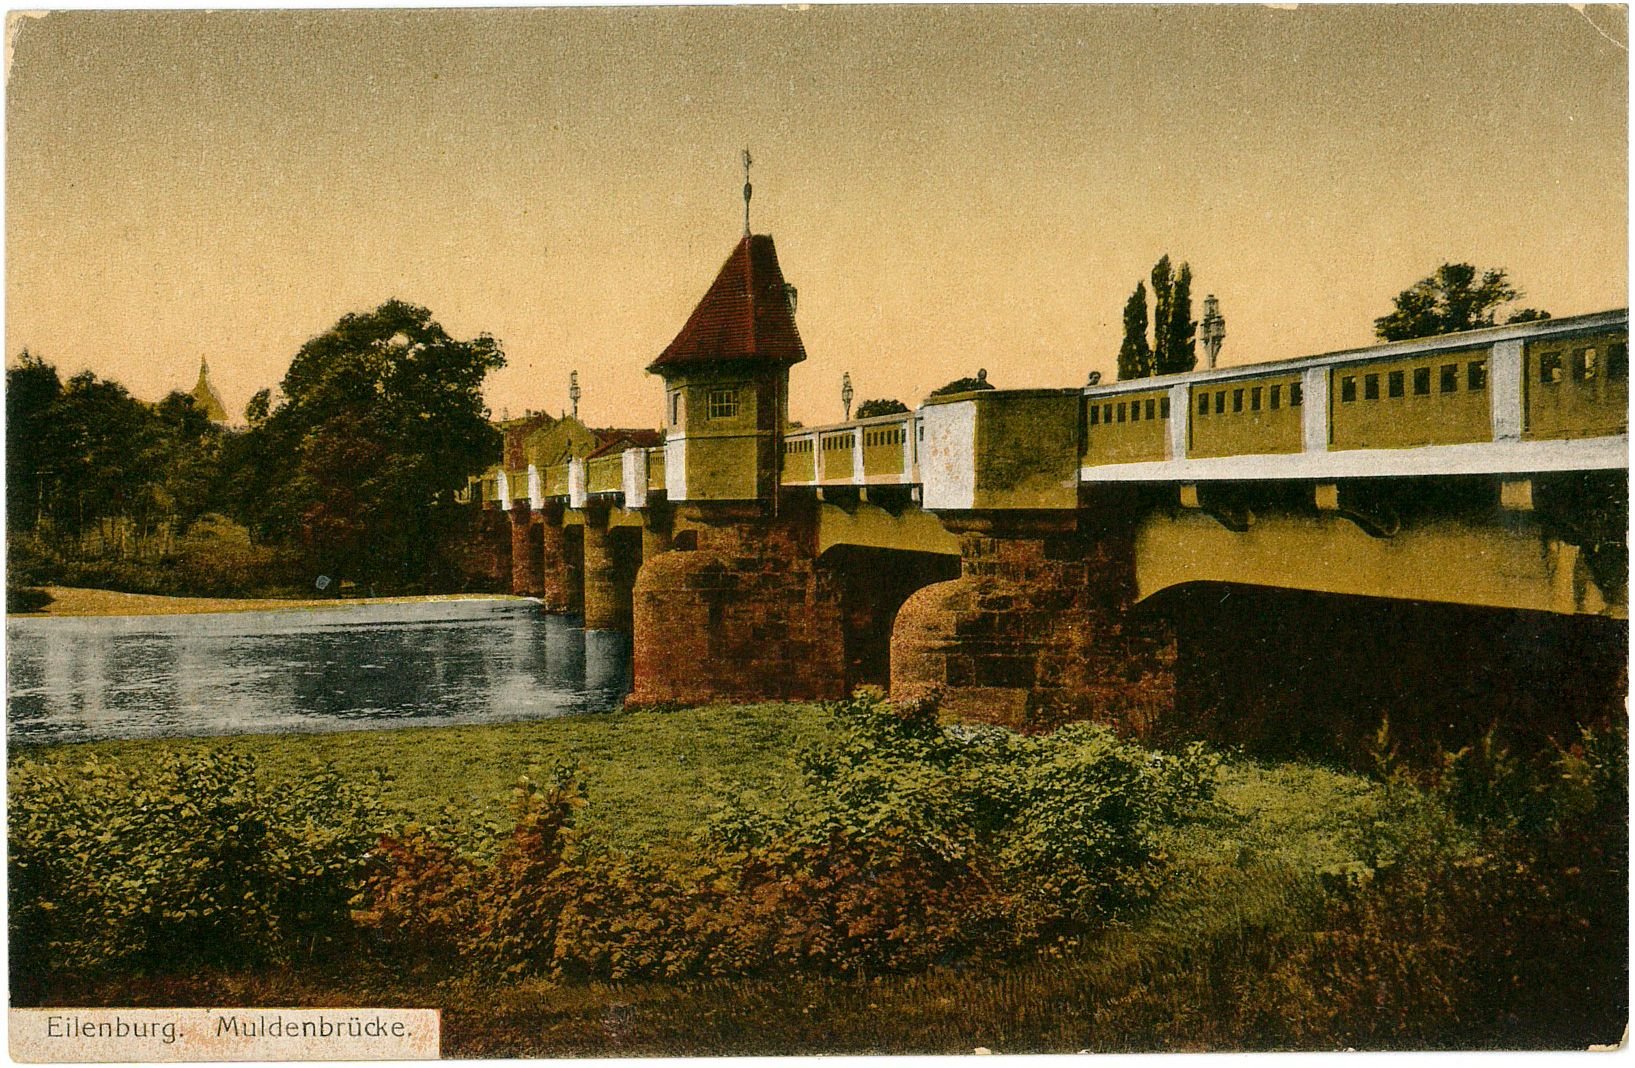 Eilenburg. Muldenbrücke (Stadtmuseum Eilenburg RR-P)